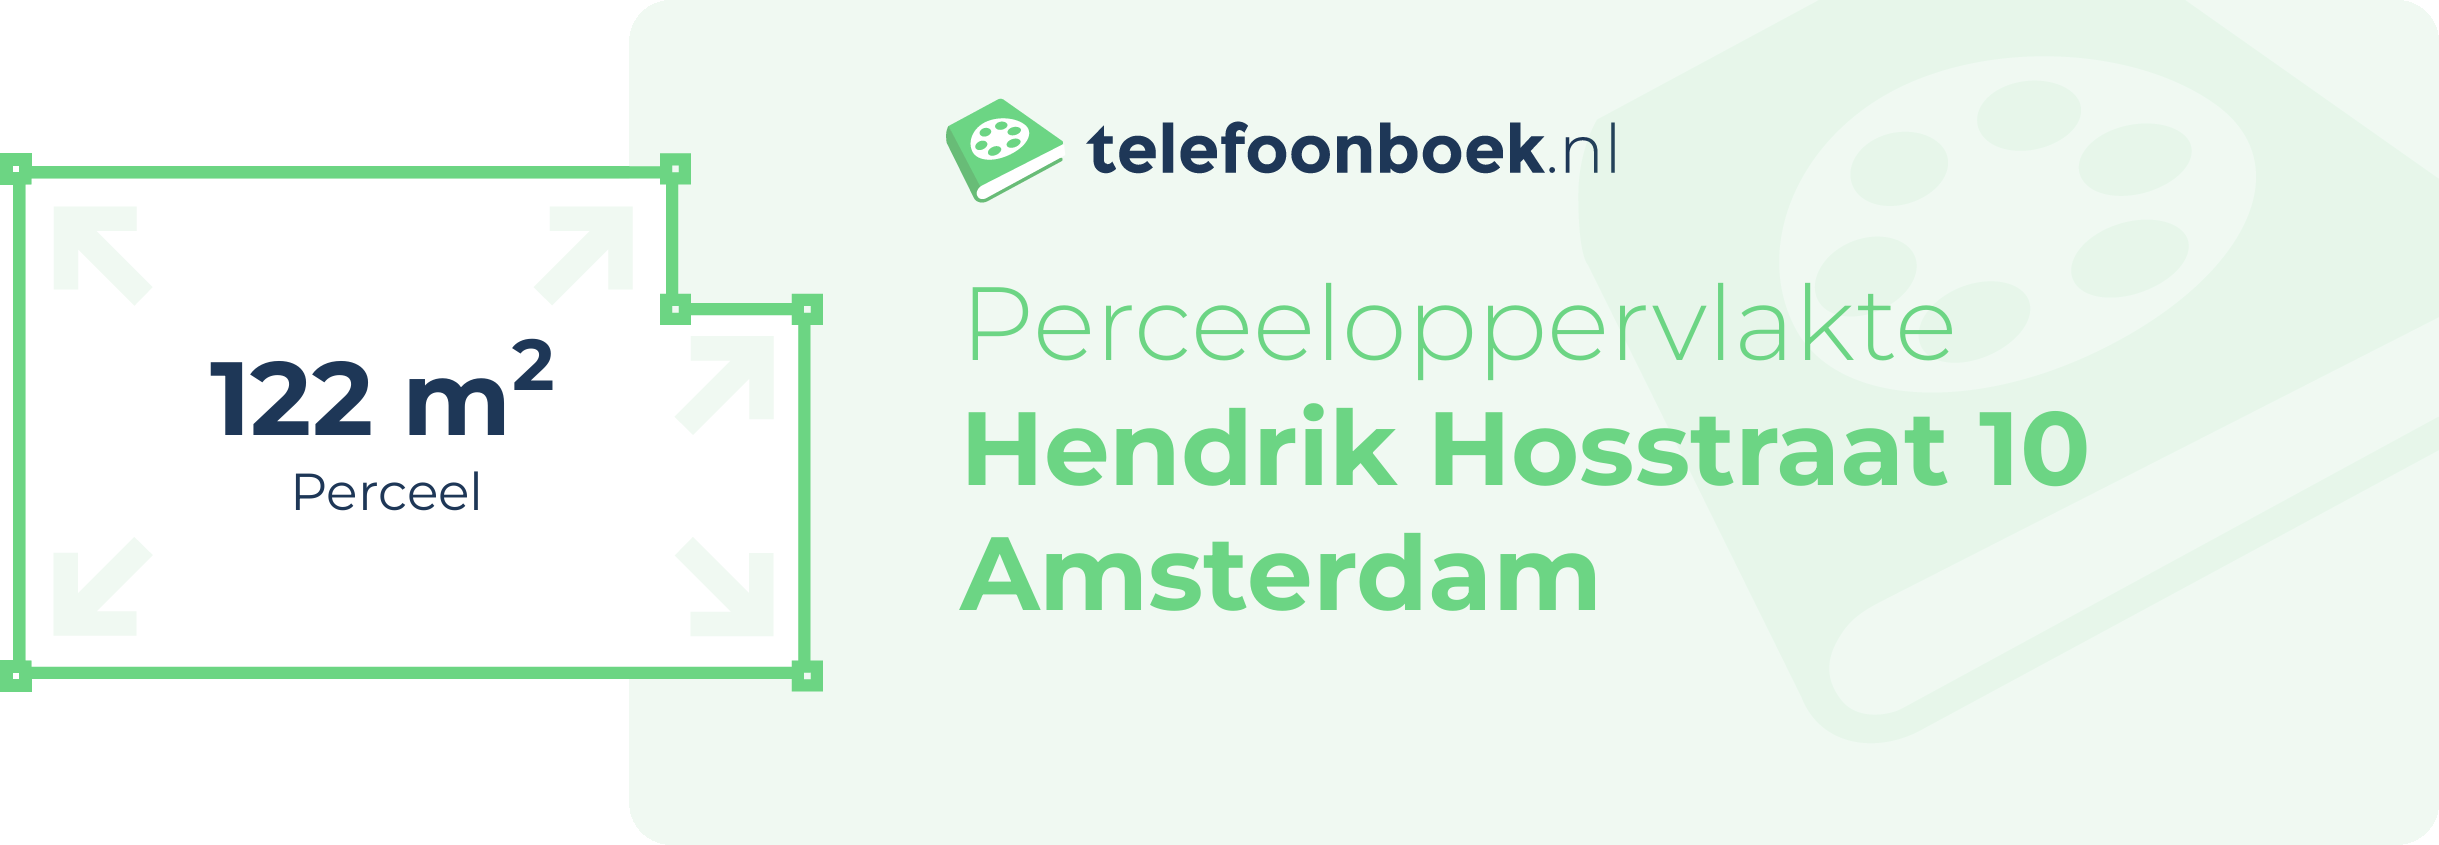 Perceeloppervlakte Hendrik Hosstraat 10 Amsterdam